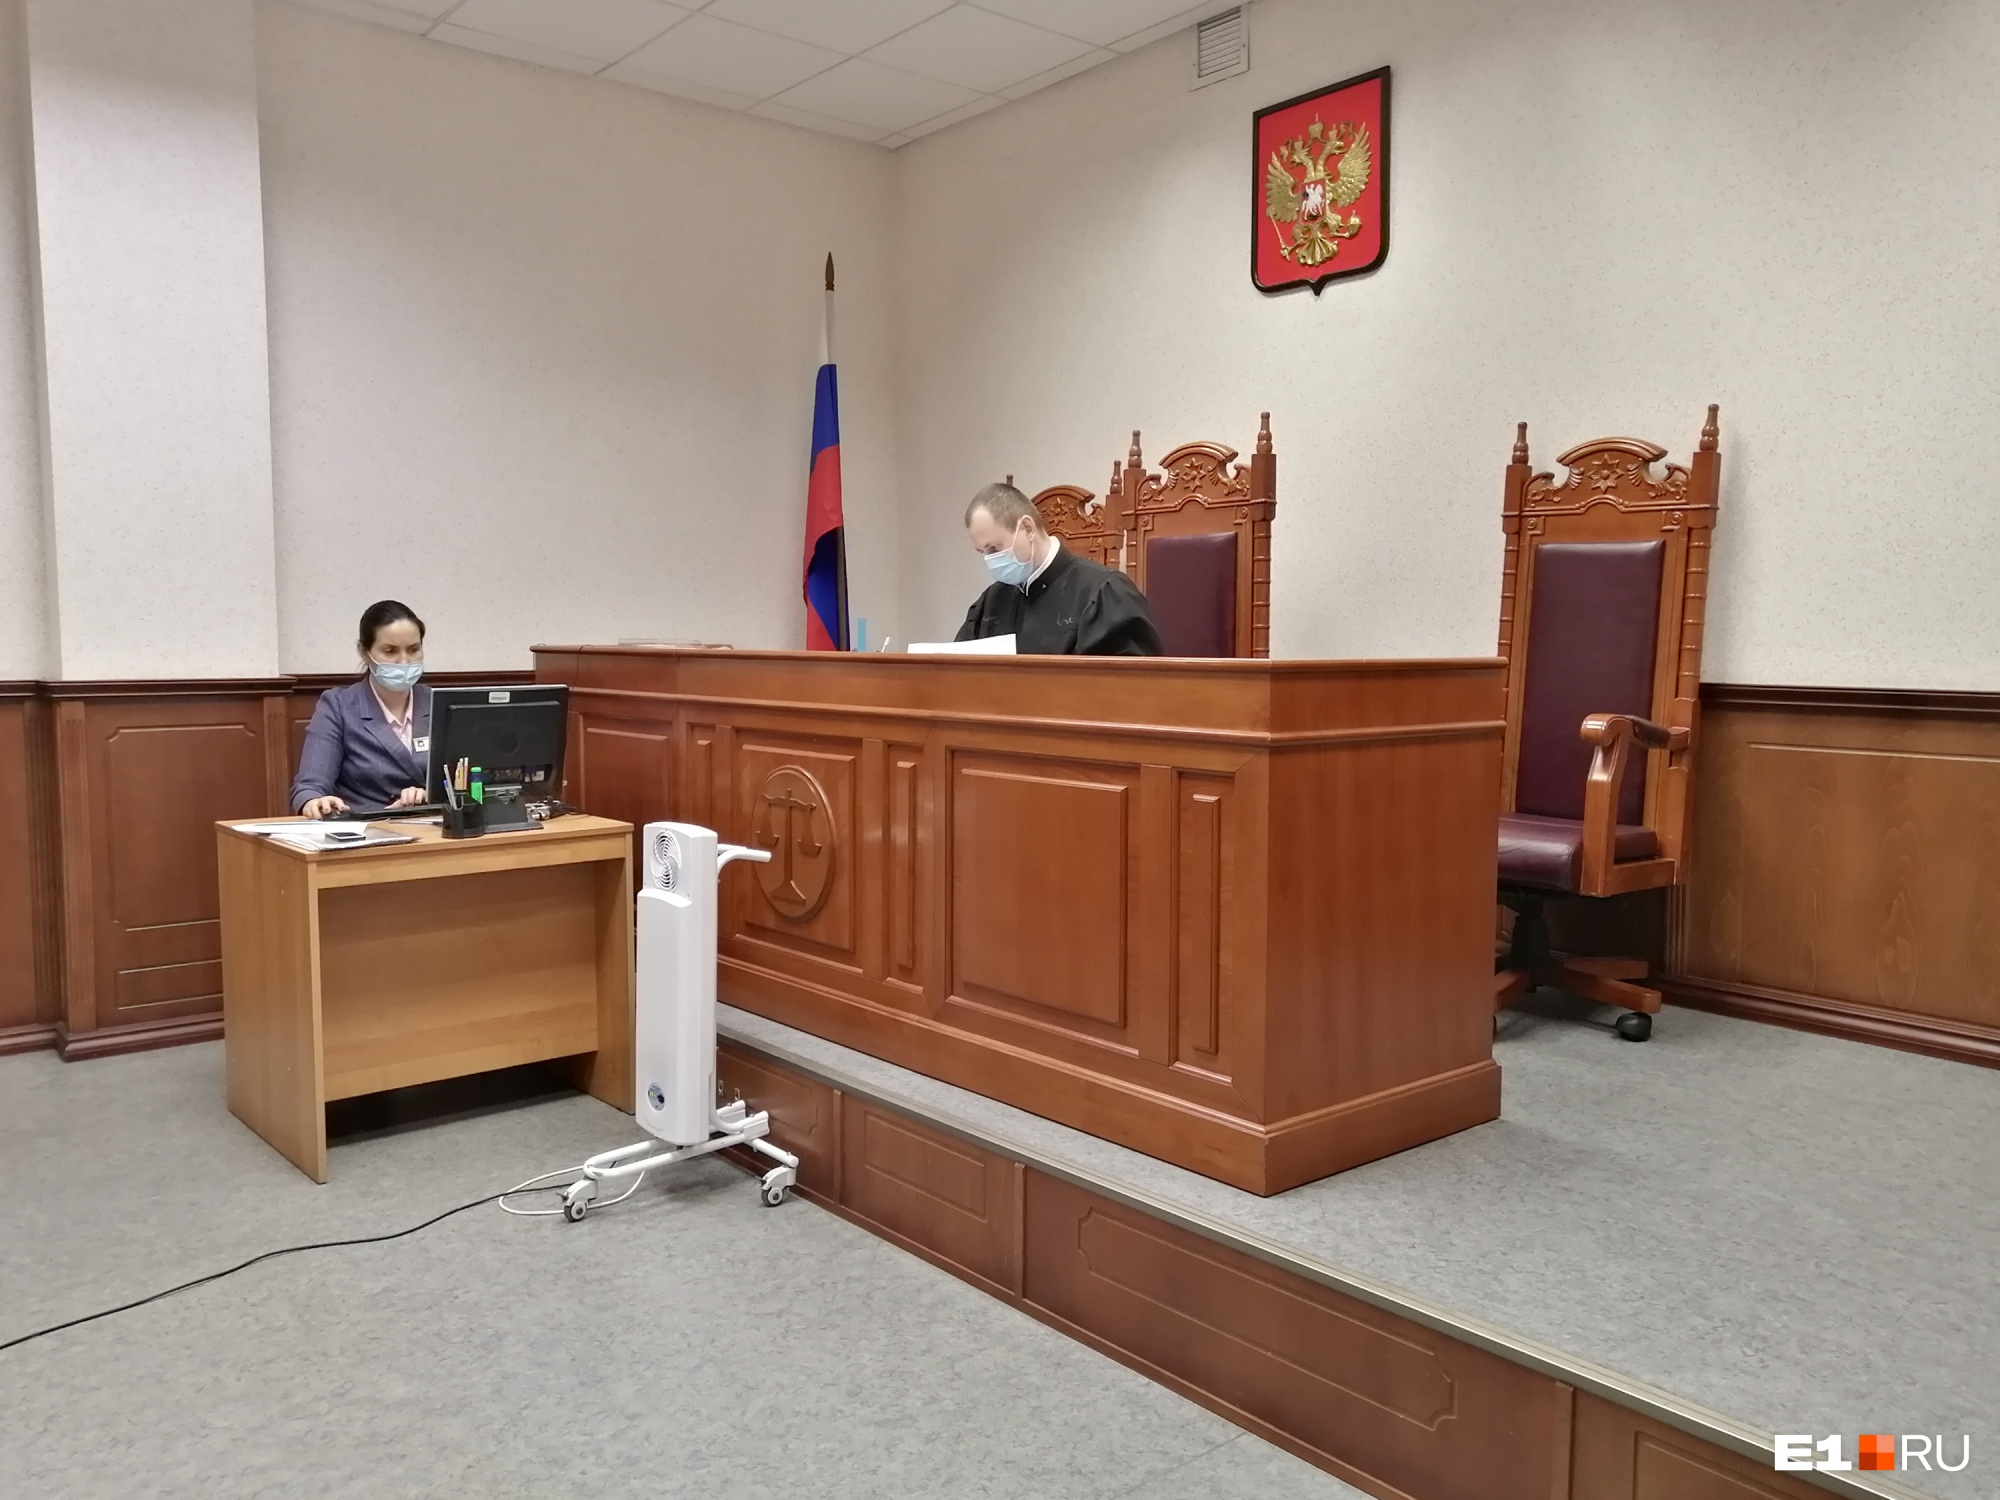 Судья Андрей Пушкарев отменил решение Ленинского районного суда